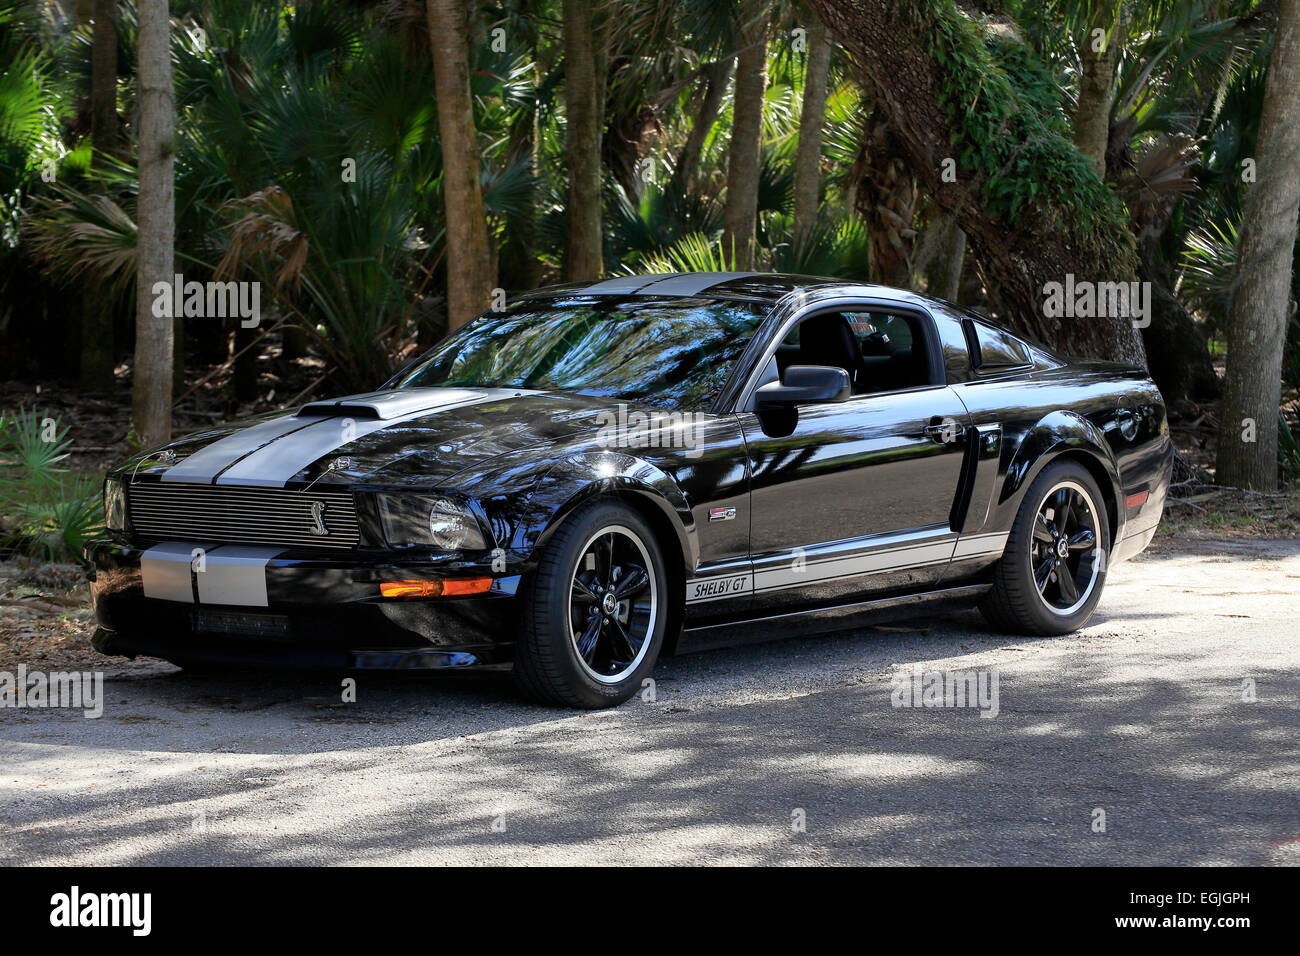 Un modello del 2007 Shelby GT Ford Mustang automobile Foto Stock